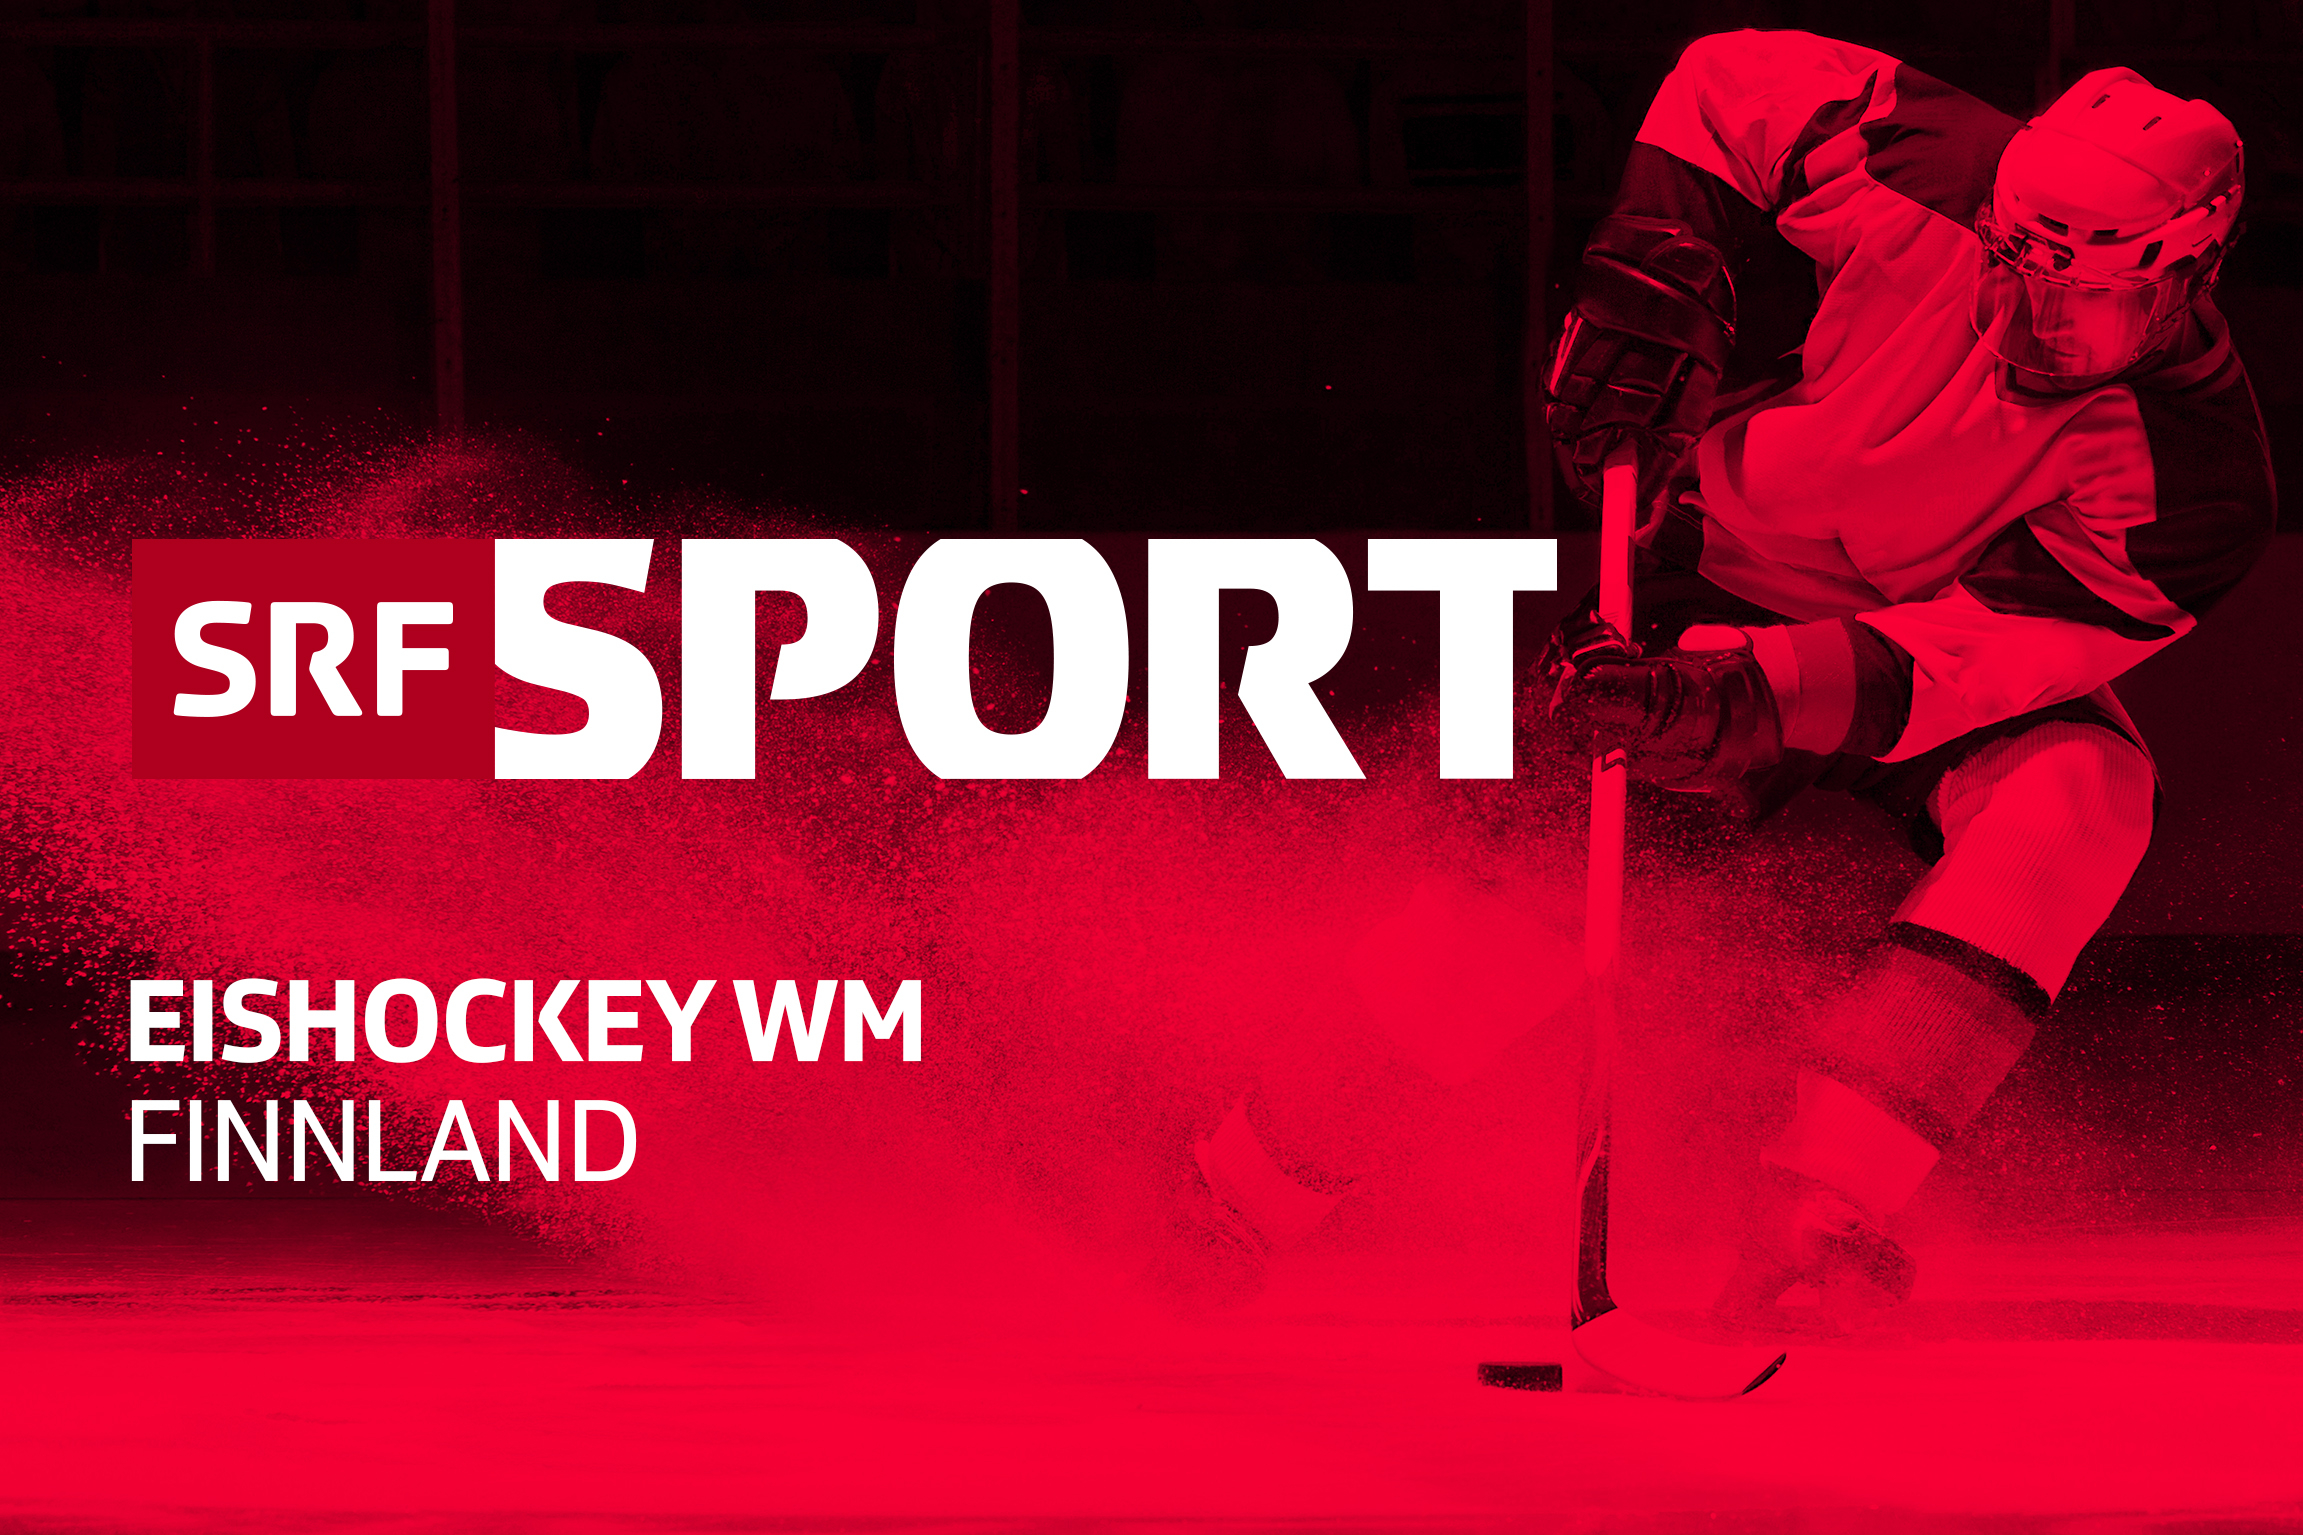 SRF bietet Rundumservice zur Eishockey-WM 2022 - Medienportal